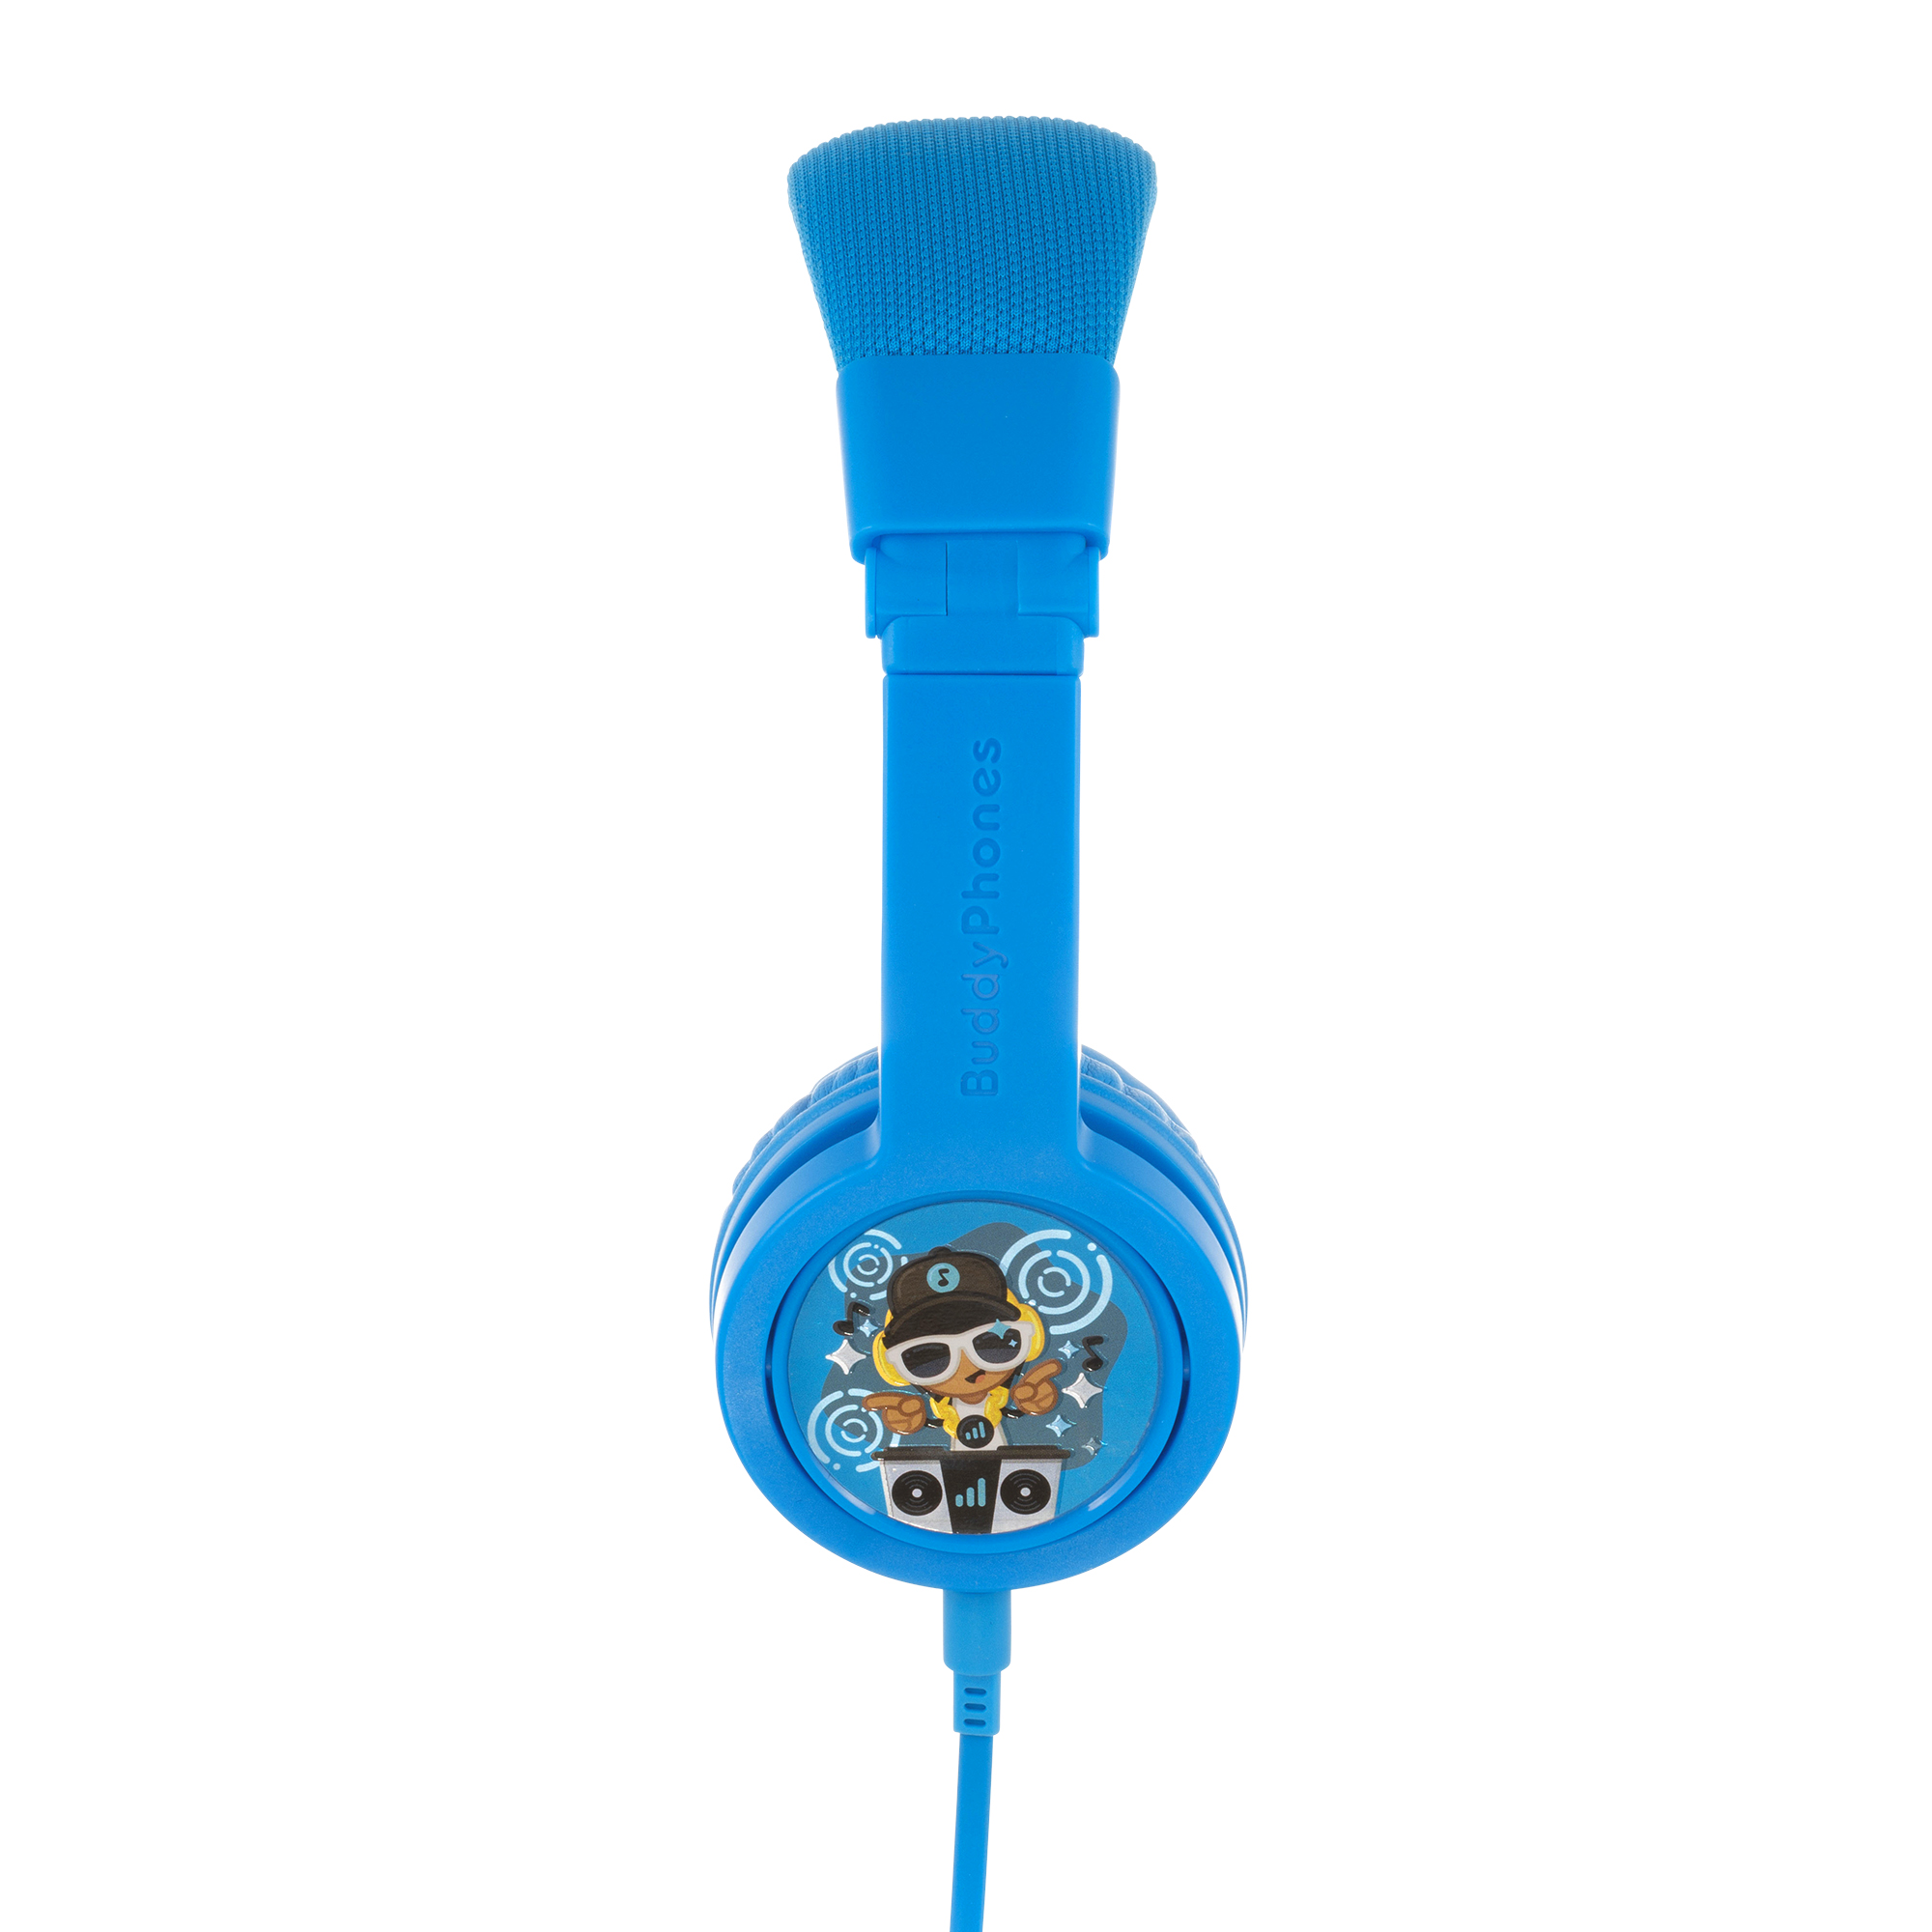 Kinder Kinder-Kopfhörer, Blau Lautstärkebegrenzende Kopfhörer BUDDYPHONES Plus Explore On-ear